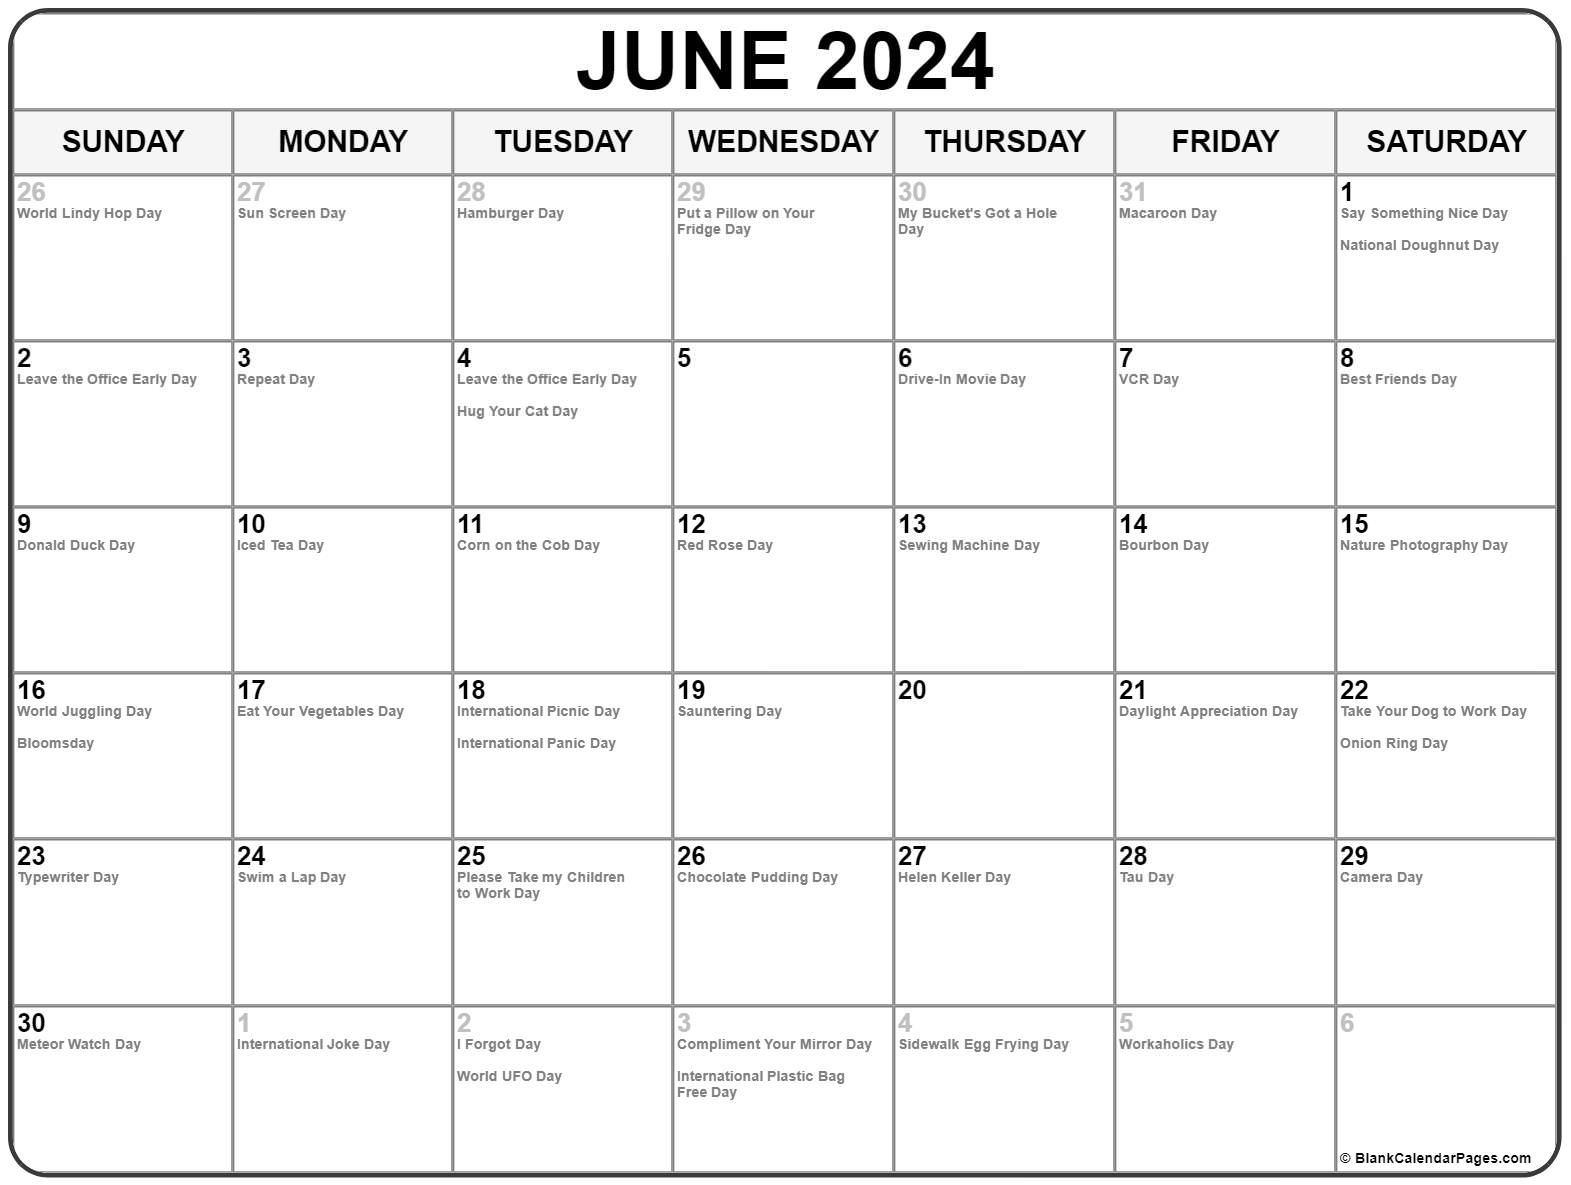 Special Day In June 2023 - PELAJARAN